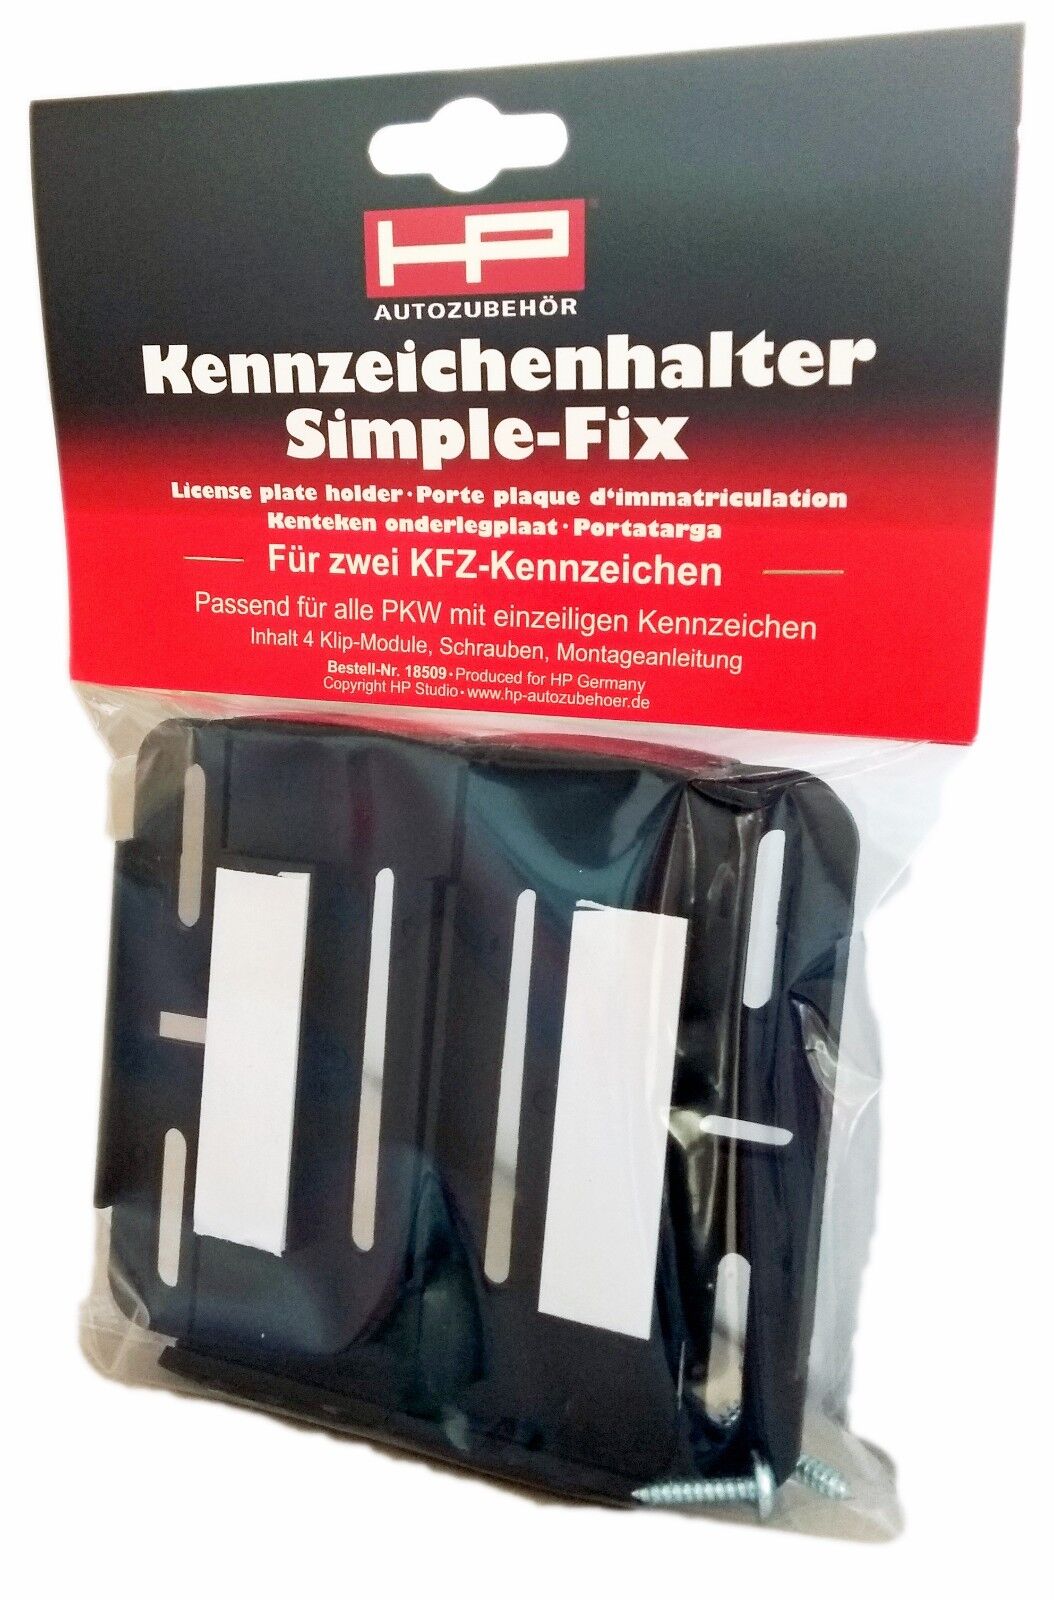 Kennzeichen Halter Set Simple Fix HP Autozubehoer 18509 4007928185099